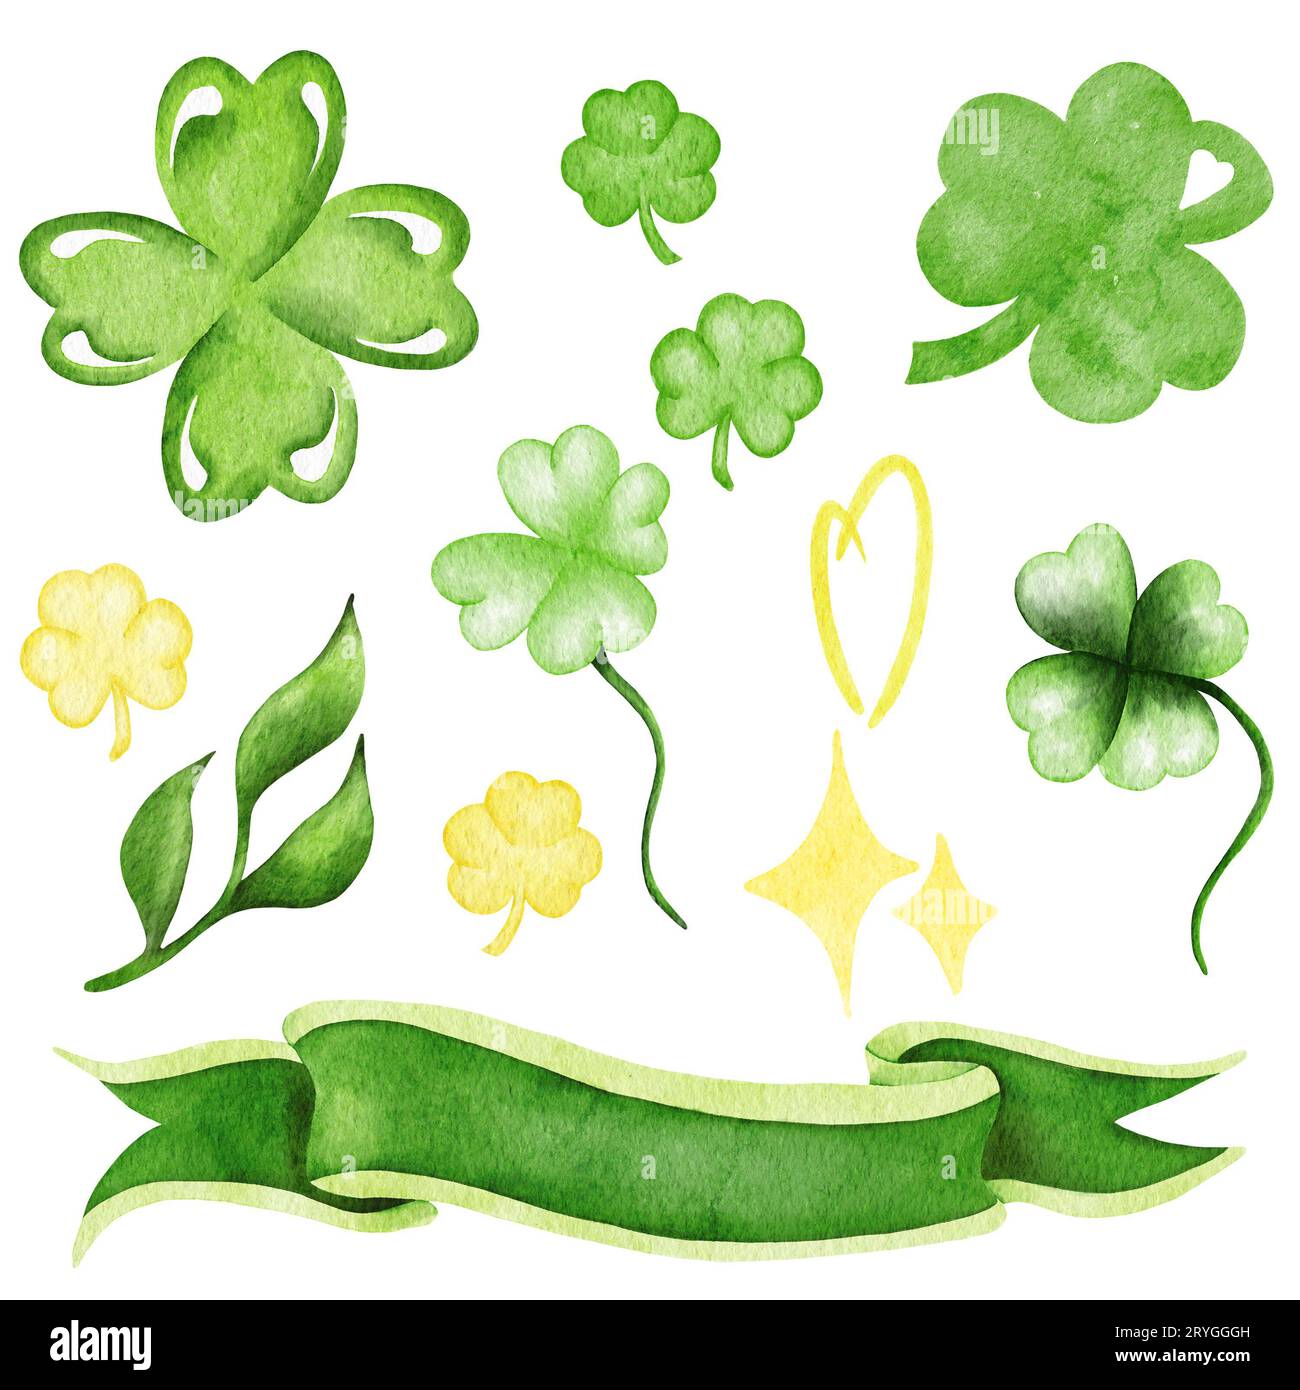 St Acquerello del giorno di Patrick con foglie verdi, edera, trifoglio. Illustrazione di festa e foglia di trifoglio di acquerello Foto Stock